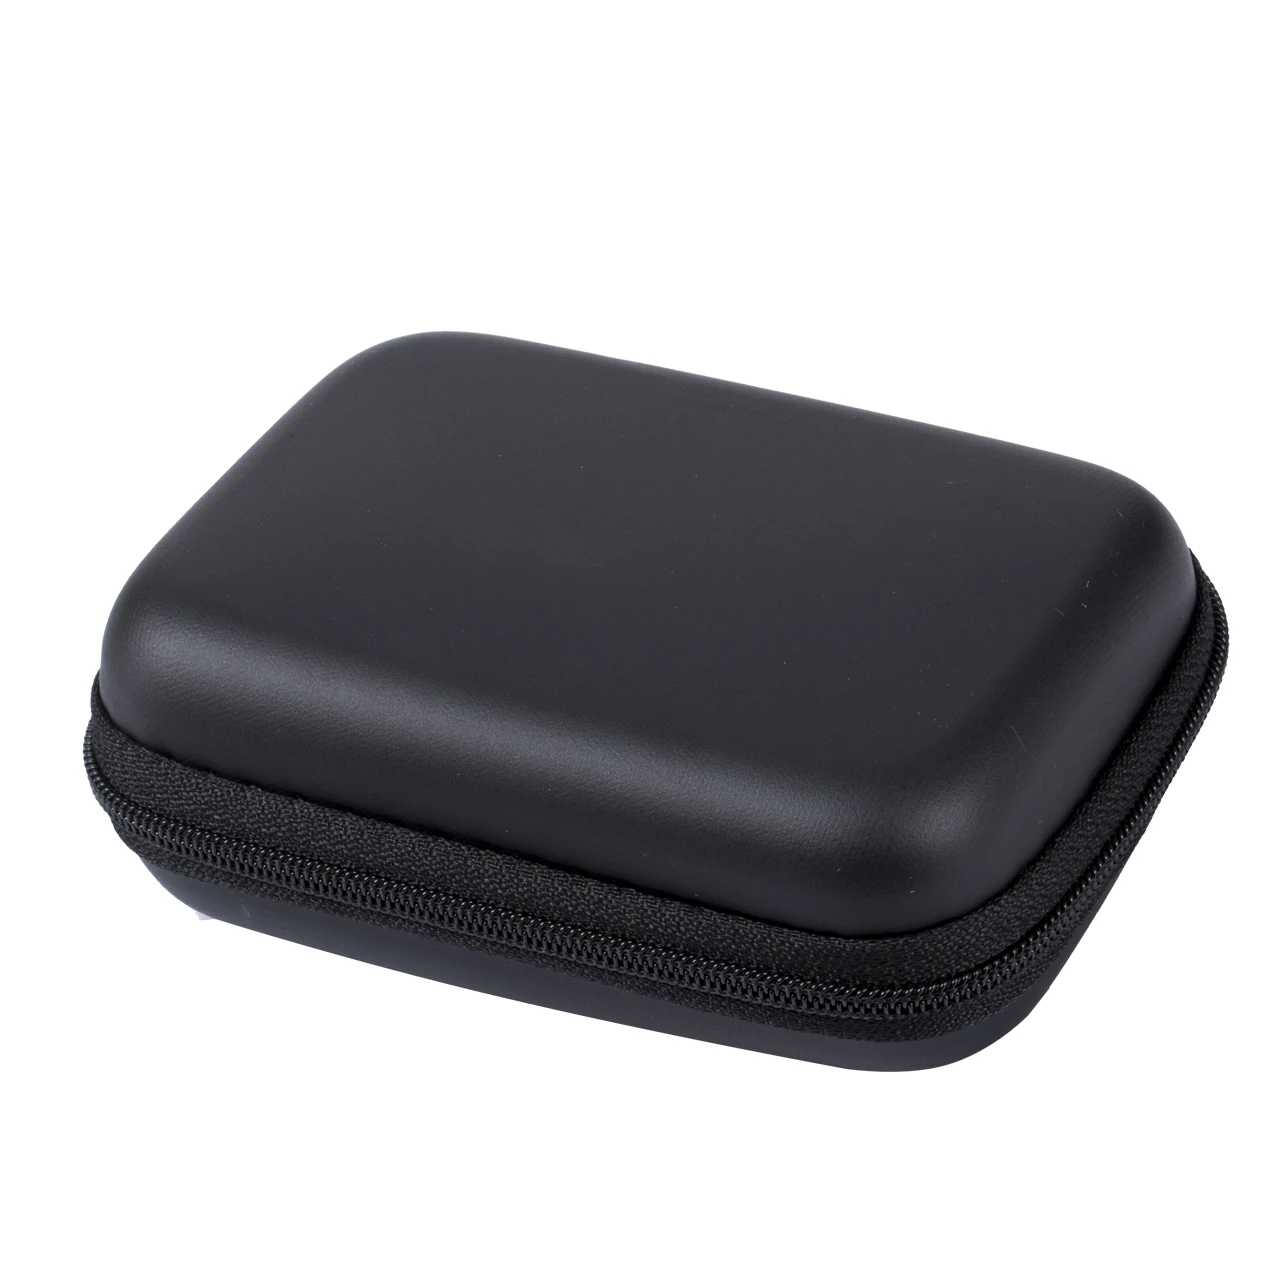 Для женщин и мужчин Путешествия цифровой USB портмоне сумка для наушников чехол вставка флэш-накопители - Цвет: Черный